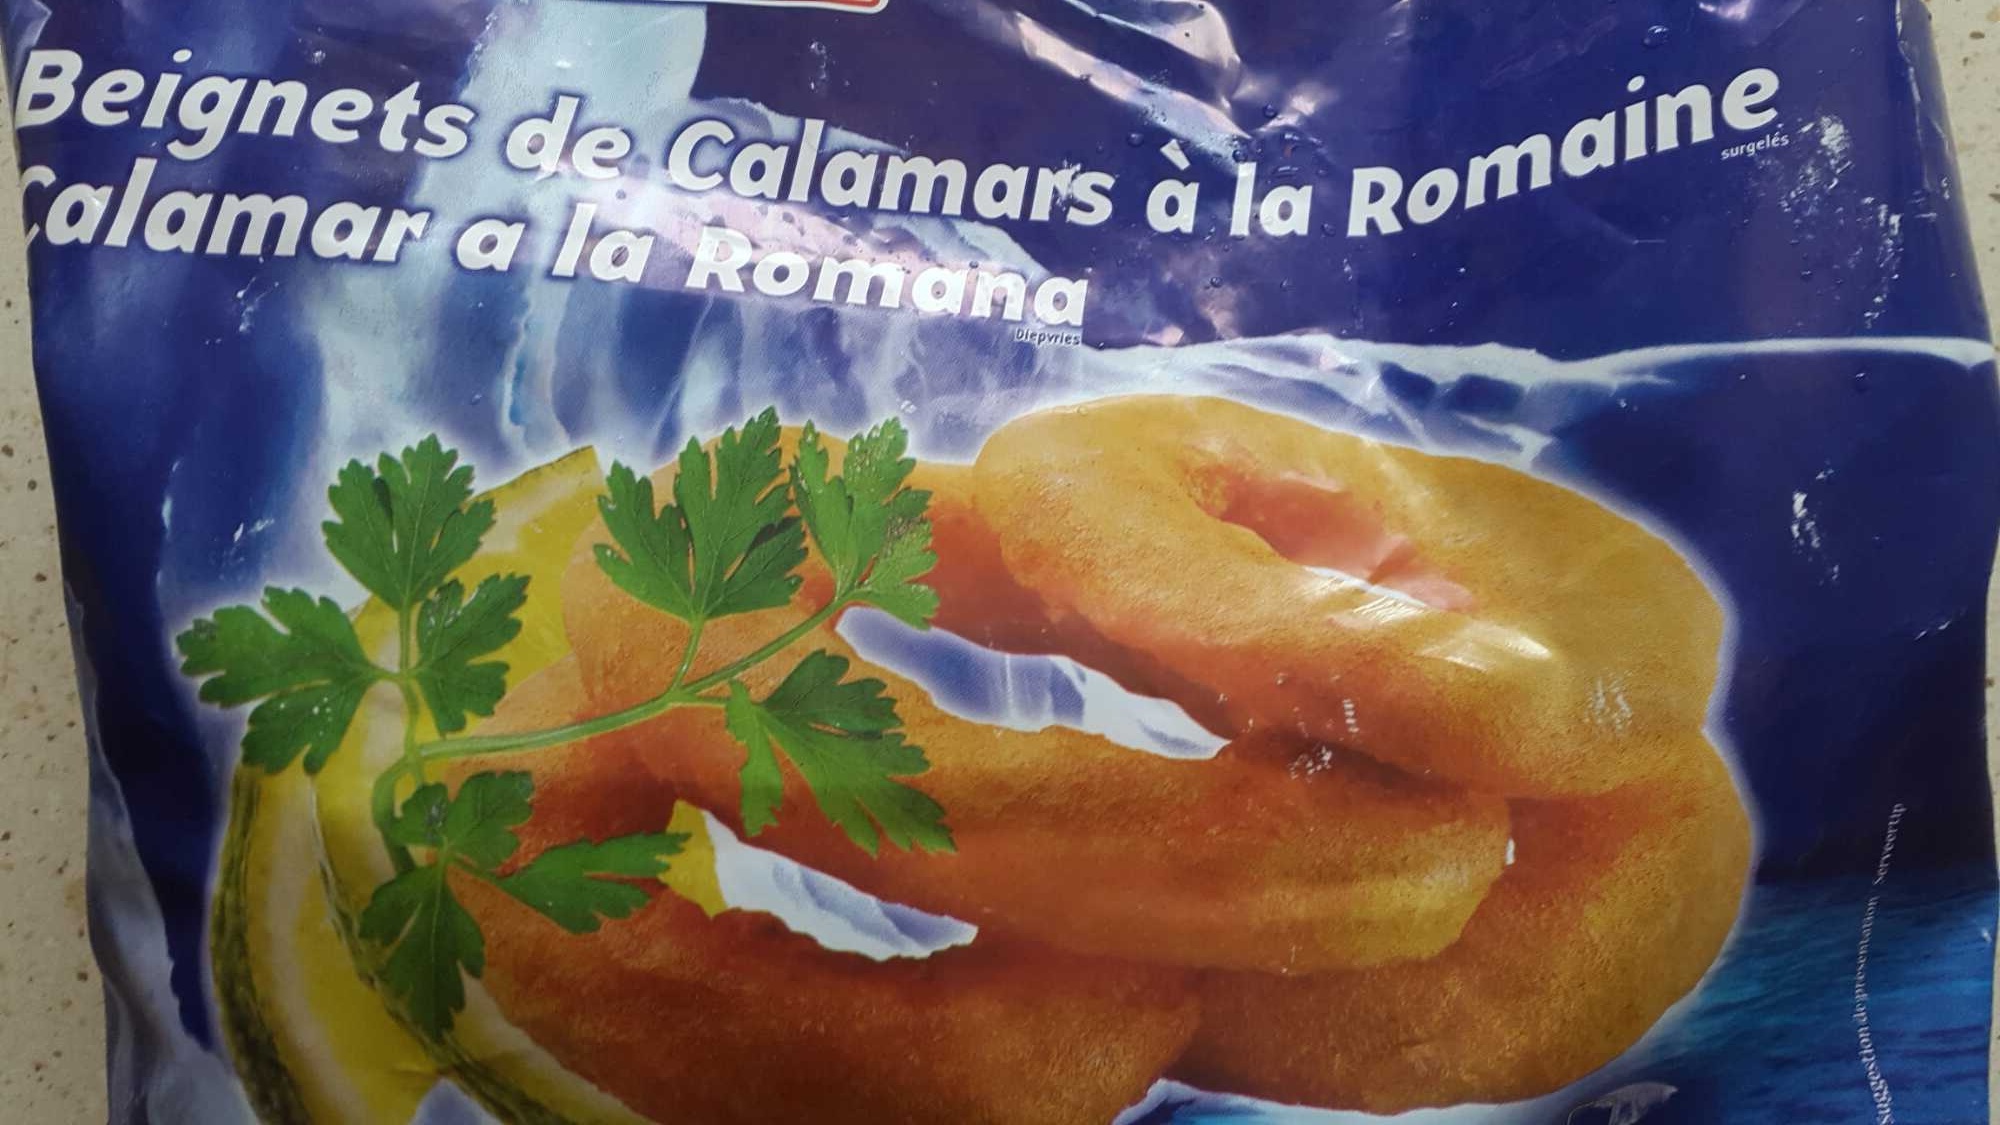 Beignets de calamar à la romaine - Product - fr